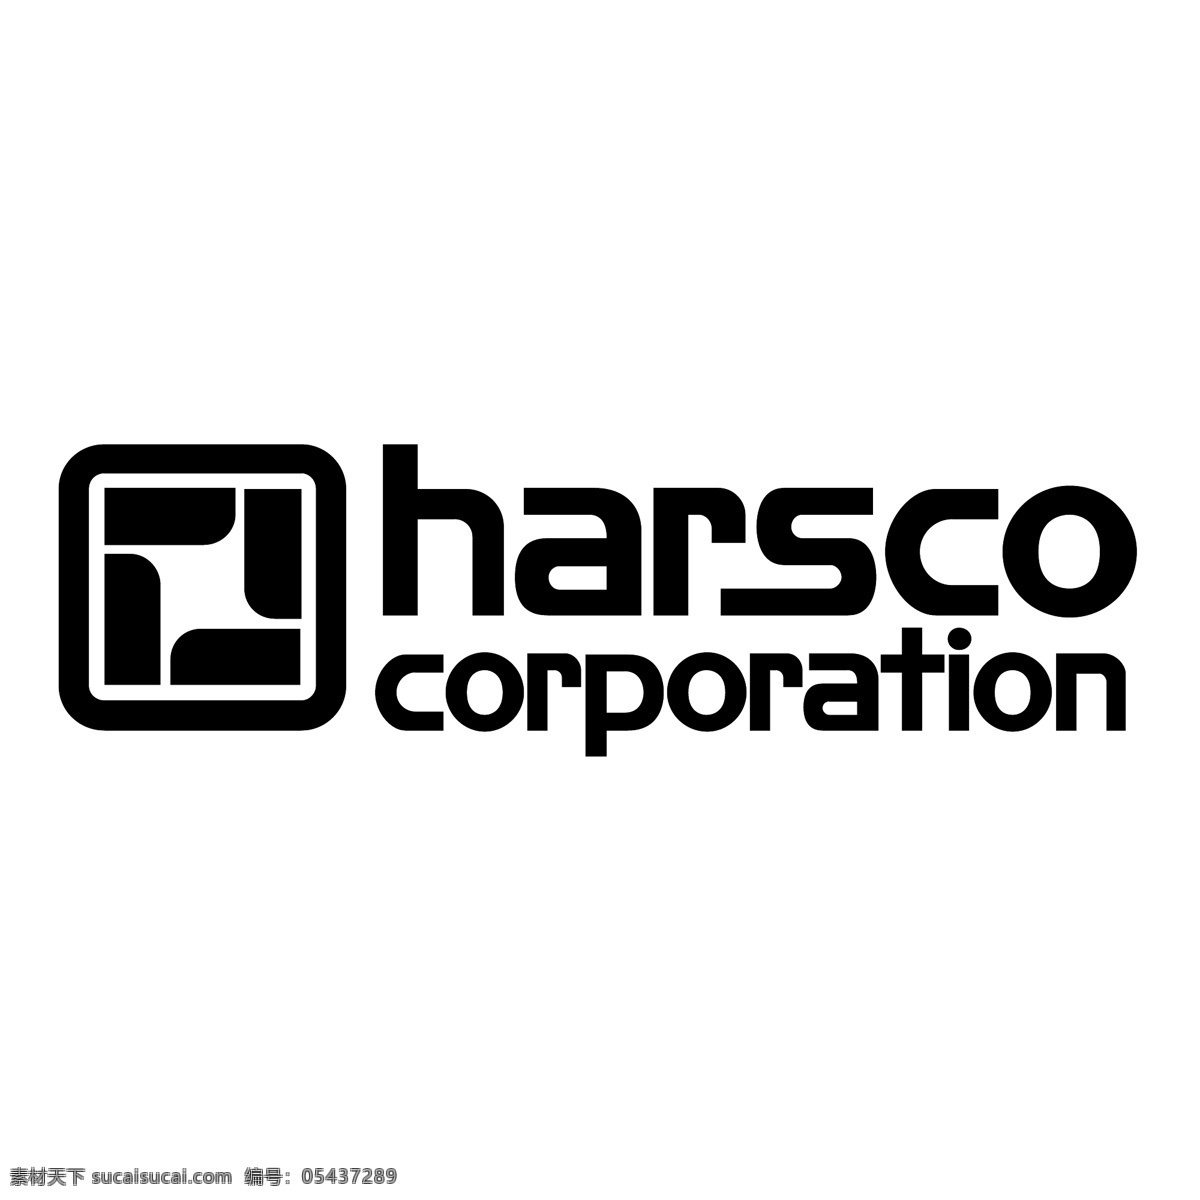 斯科 公司 哈斯科 哈斯科公司 矢量图 其他矢量图